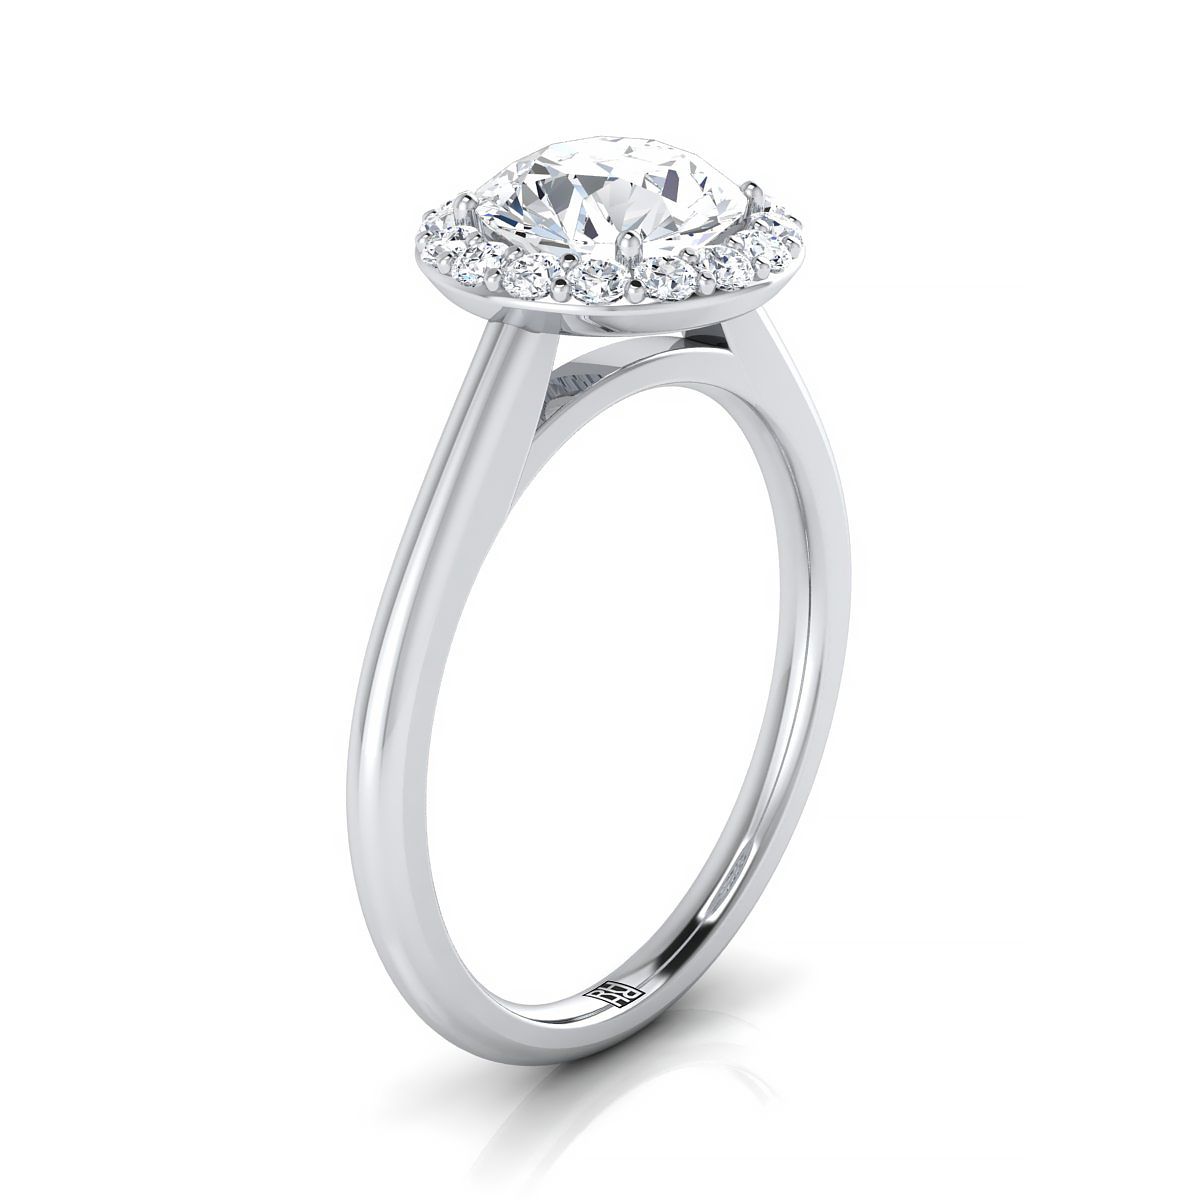 18K White Gold Round Brilliant Aquamarine Shared Prong Diamond Halo Engagement Ring -1/5ctw